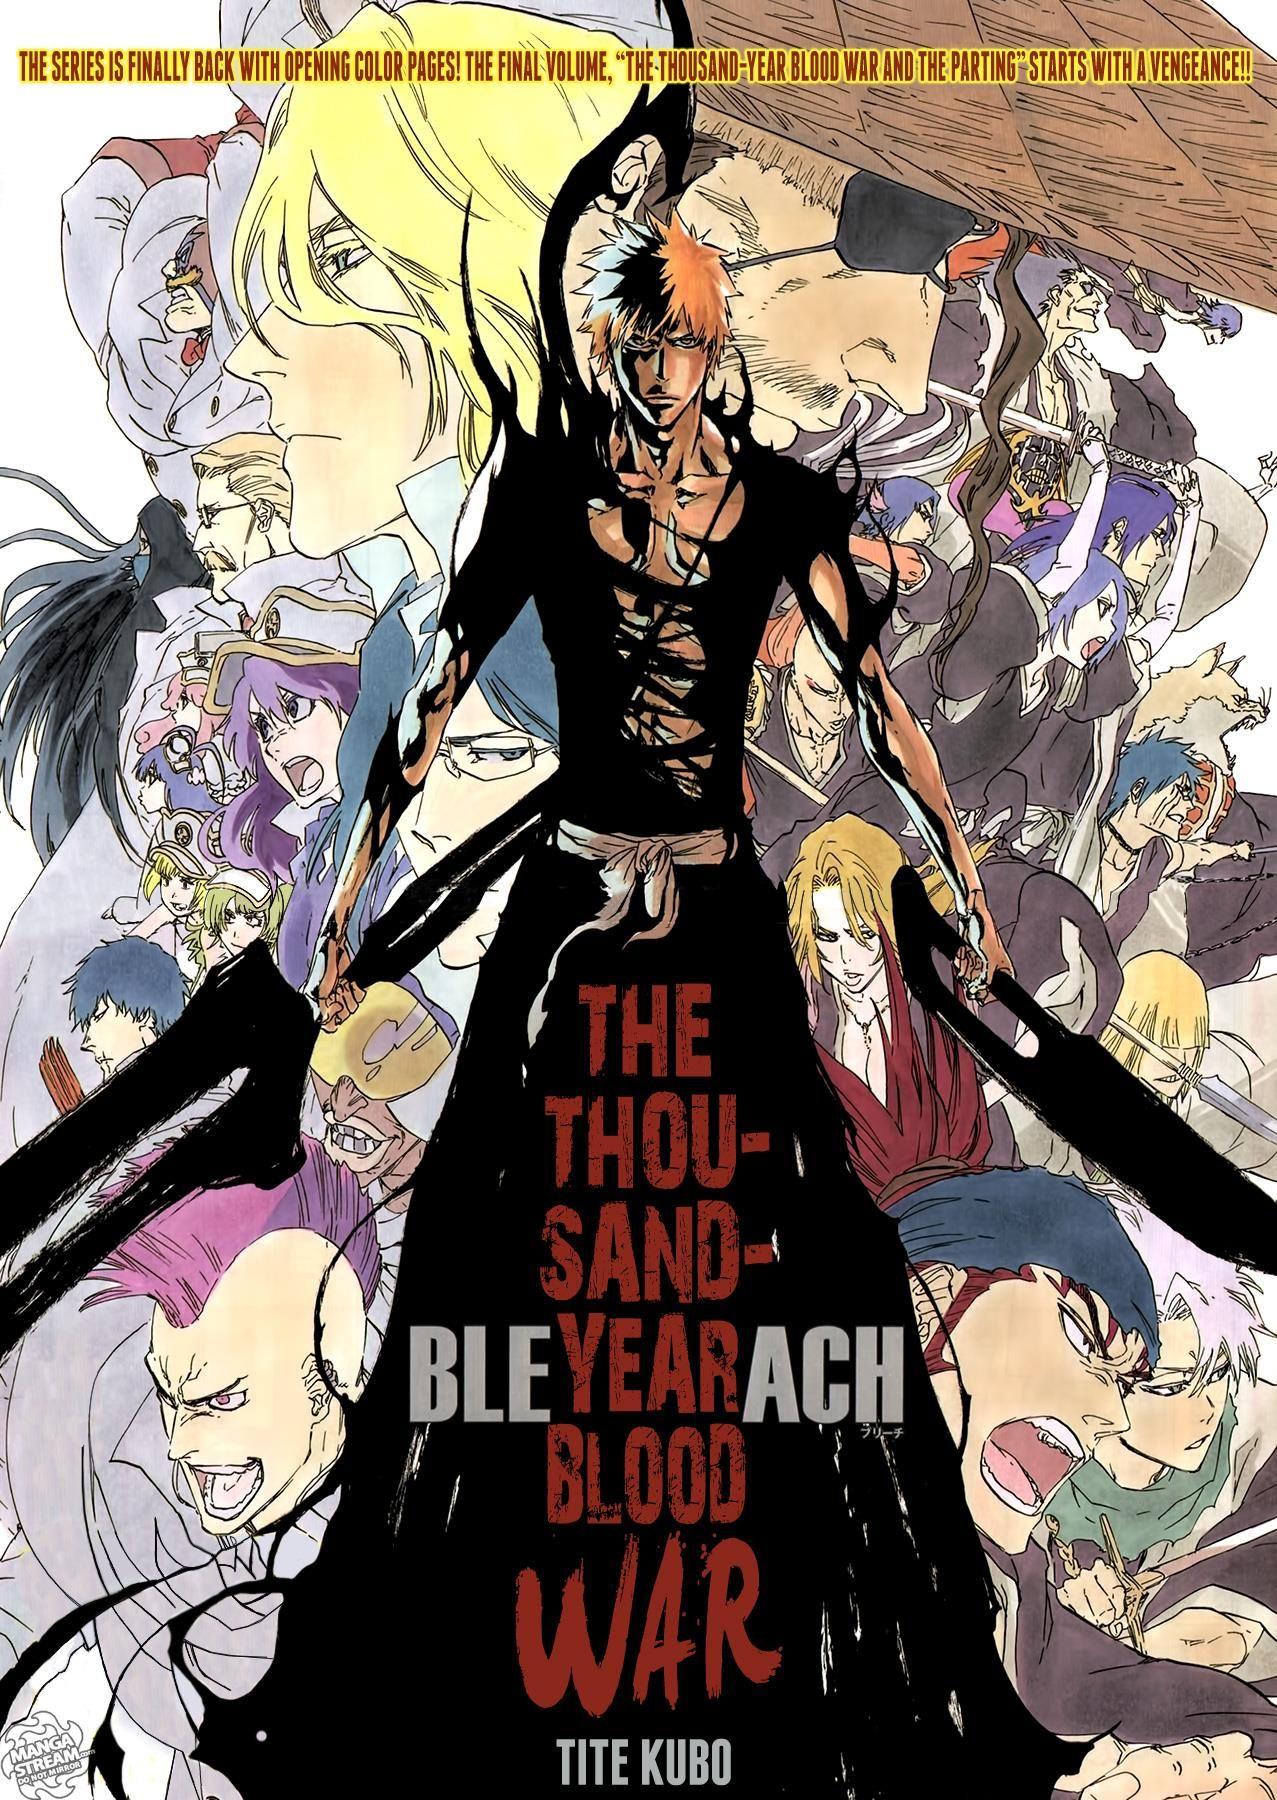 Bleach. The Thousand Year Blood War. Bleach. Bleach, Bleach anime